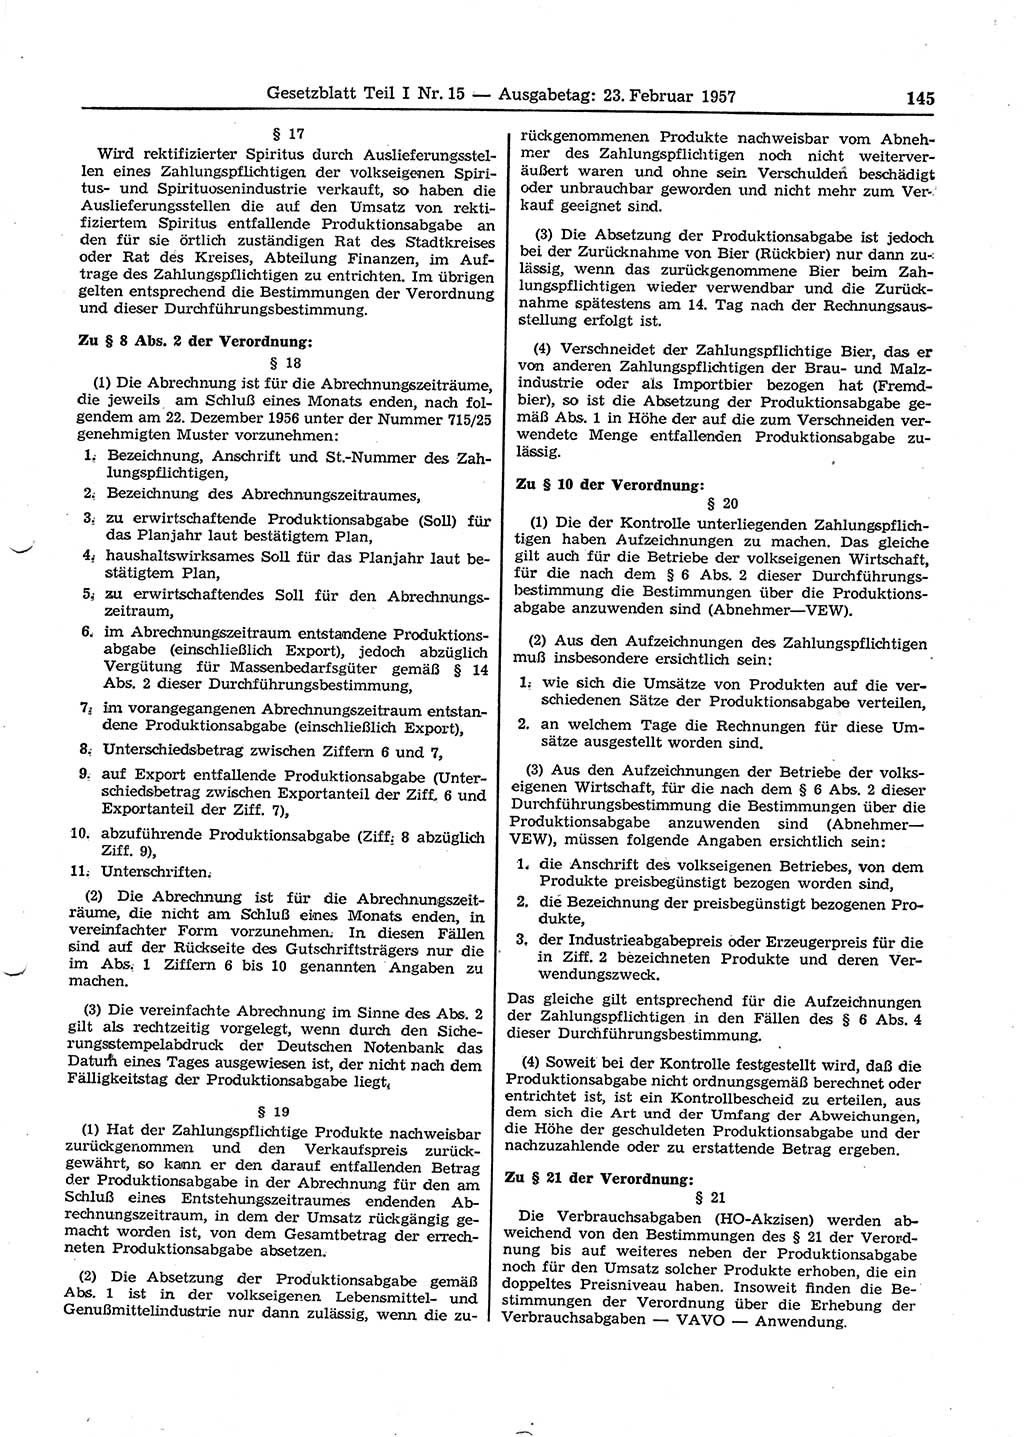 Gesetzblatt (GBl.) der Deutschen Demokratischen Republik (DDR) Teil Ⅰ 1957, Seite 145 (GBl. DDR Ⅰ 1957, S. 145)